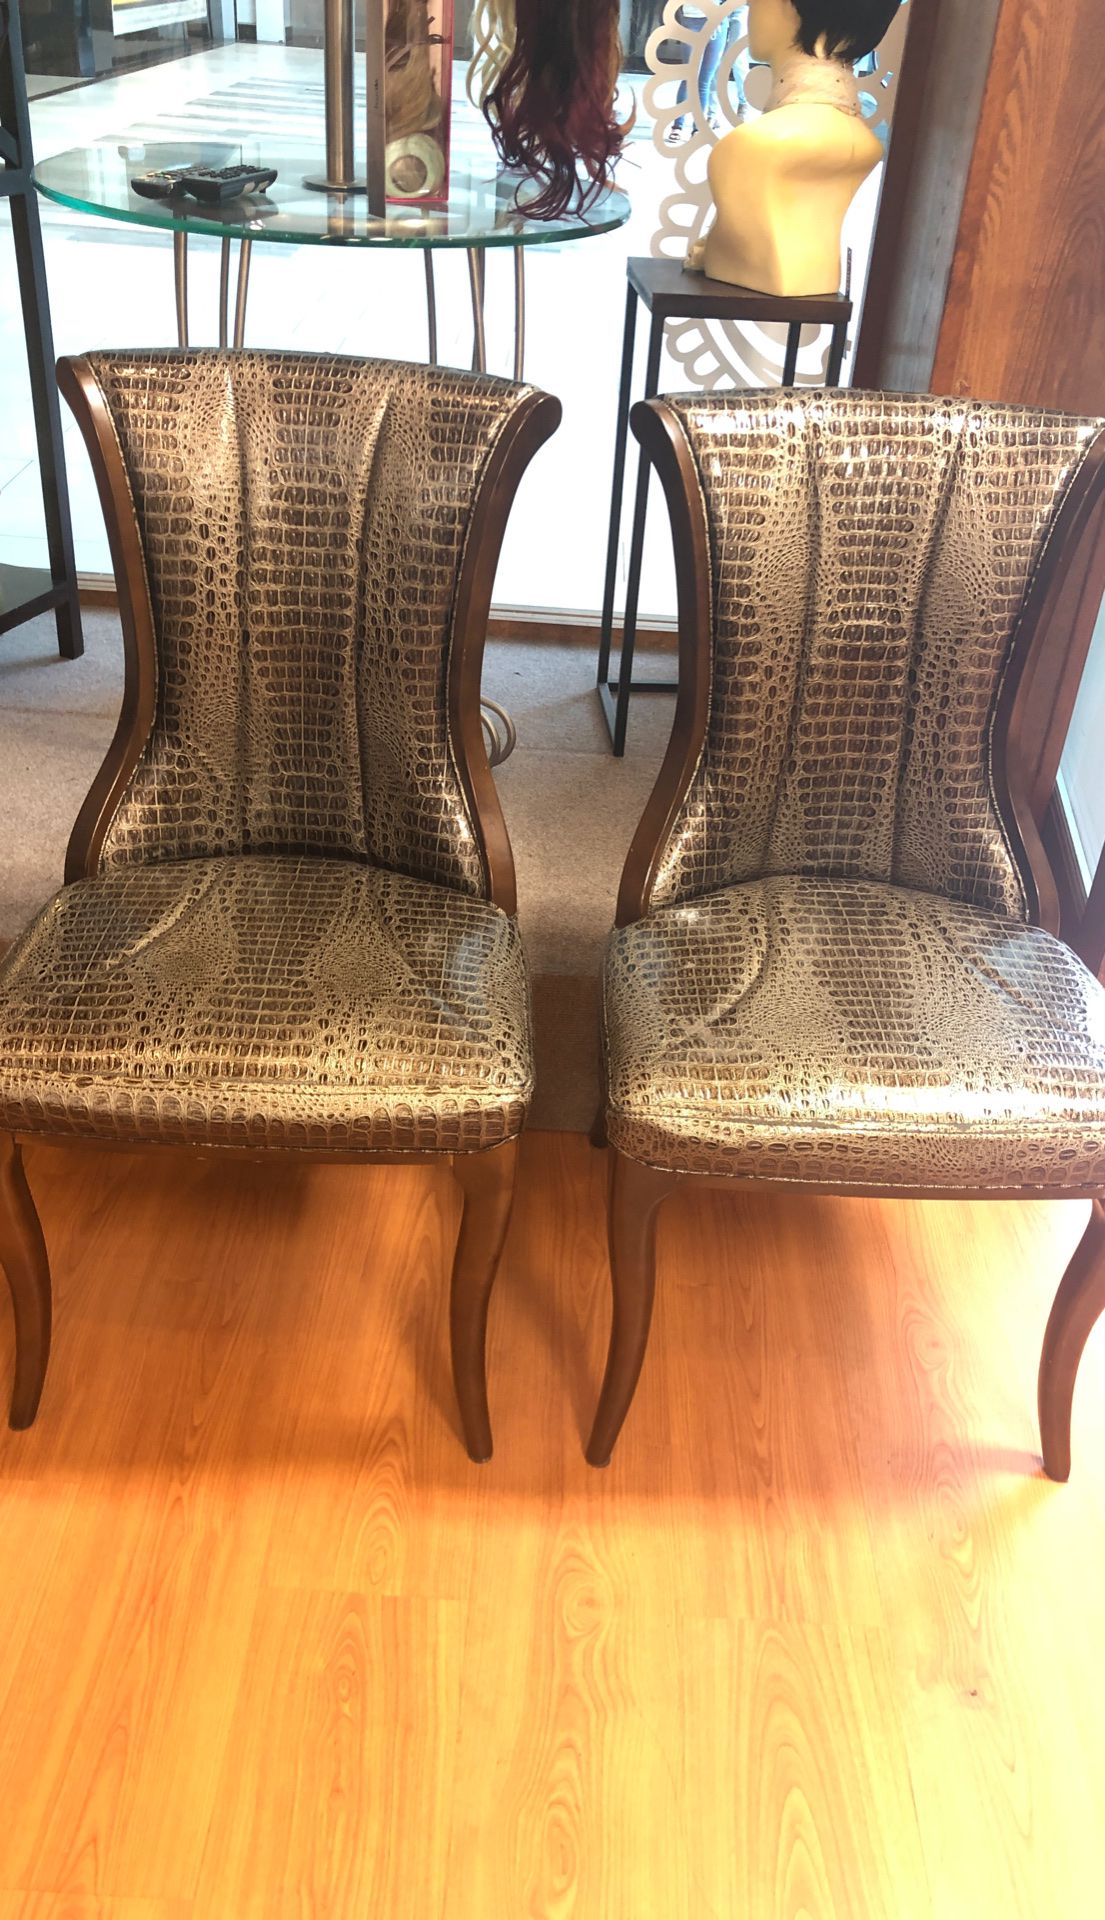 Nice brown chairs